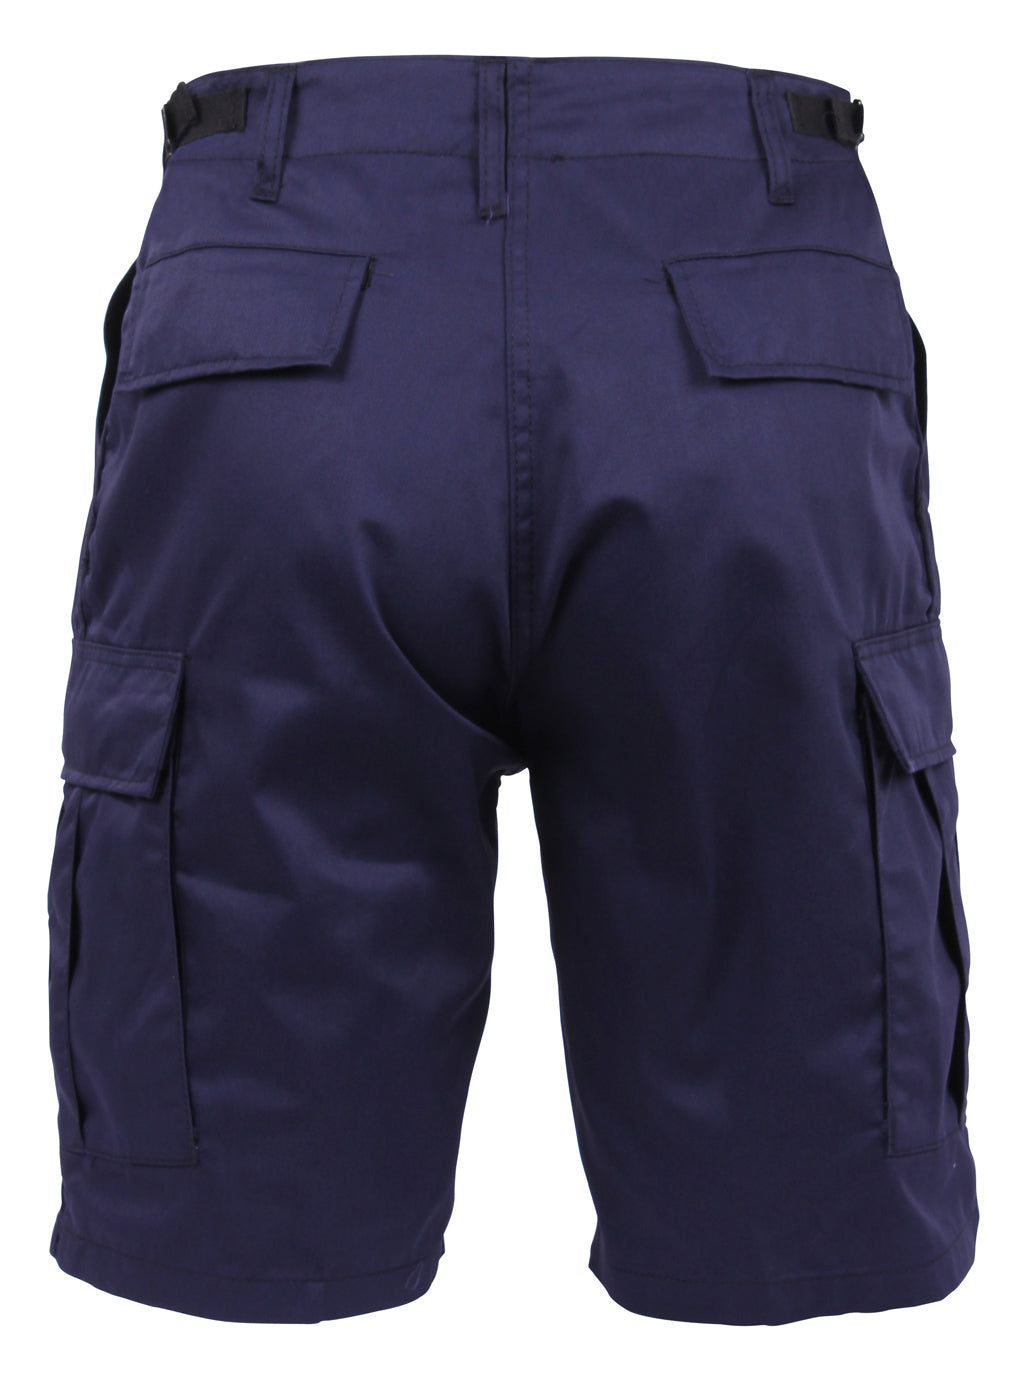 Rothco Tactical BDU Shorts - Navy Blue